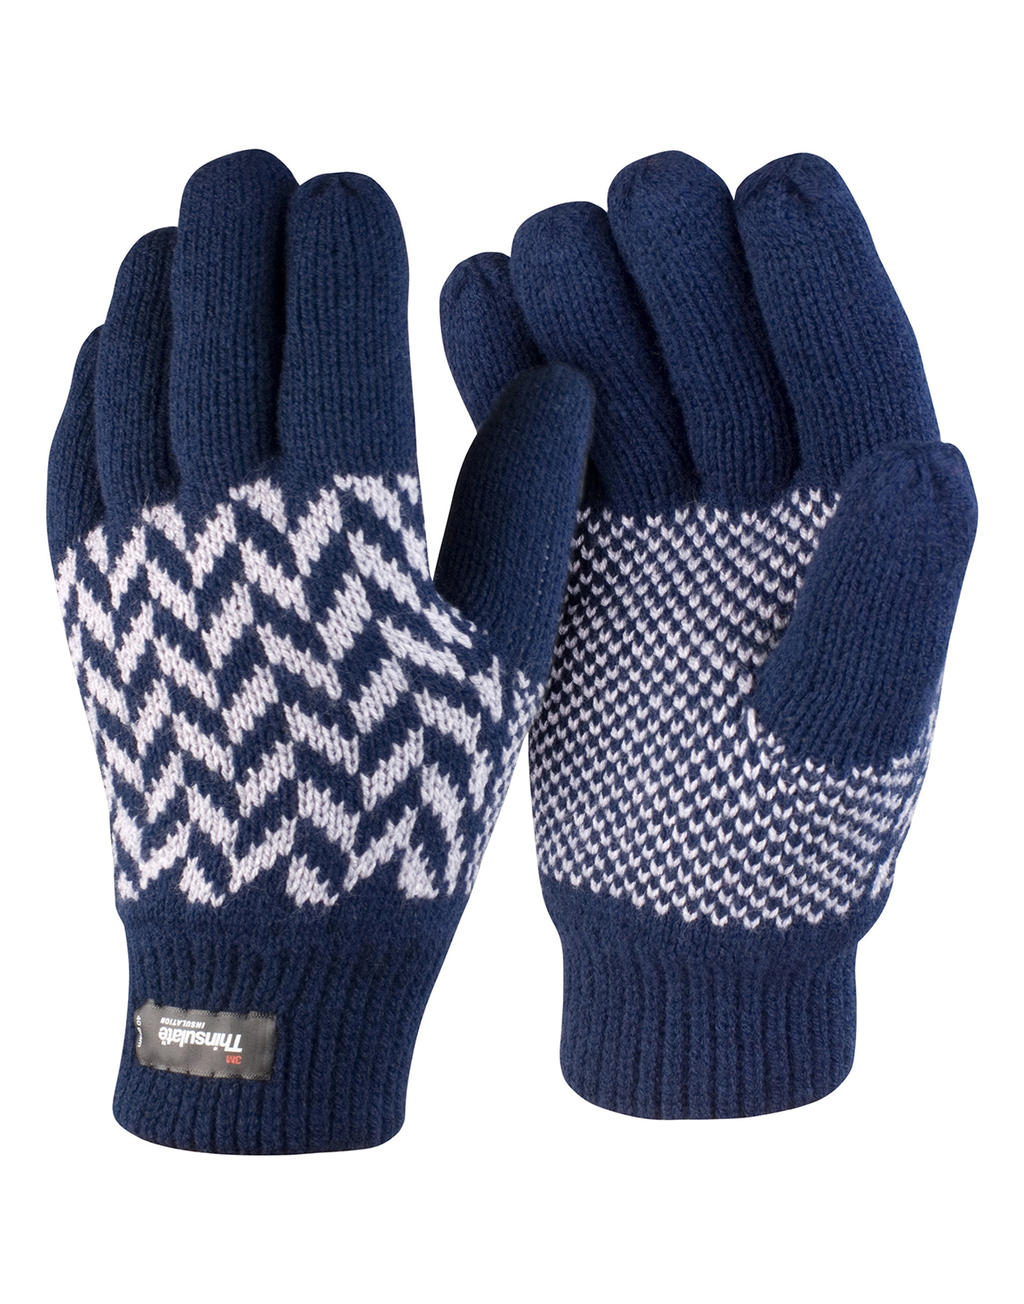 Result Winter Essentials Thinsulate Handschuhe günstig